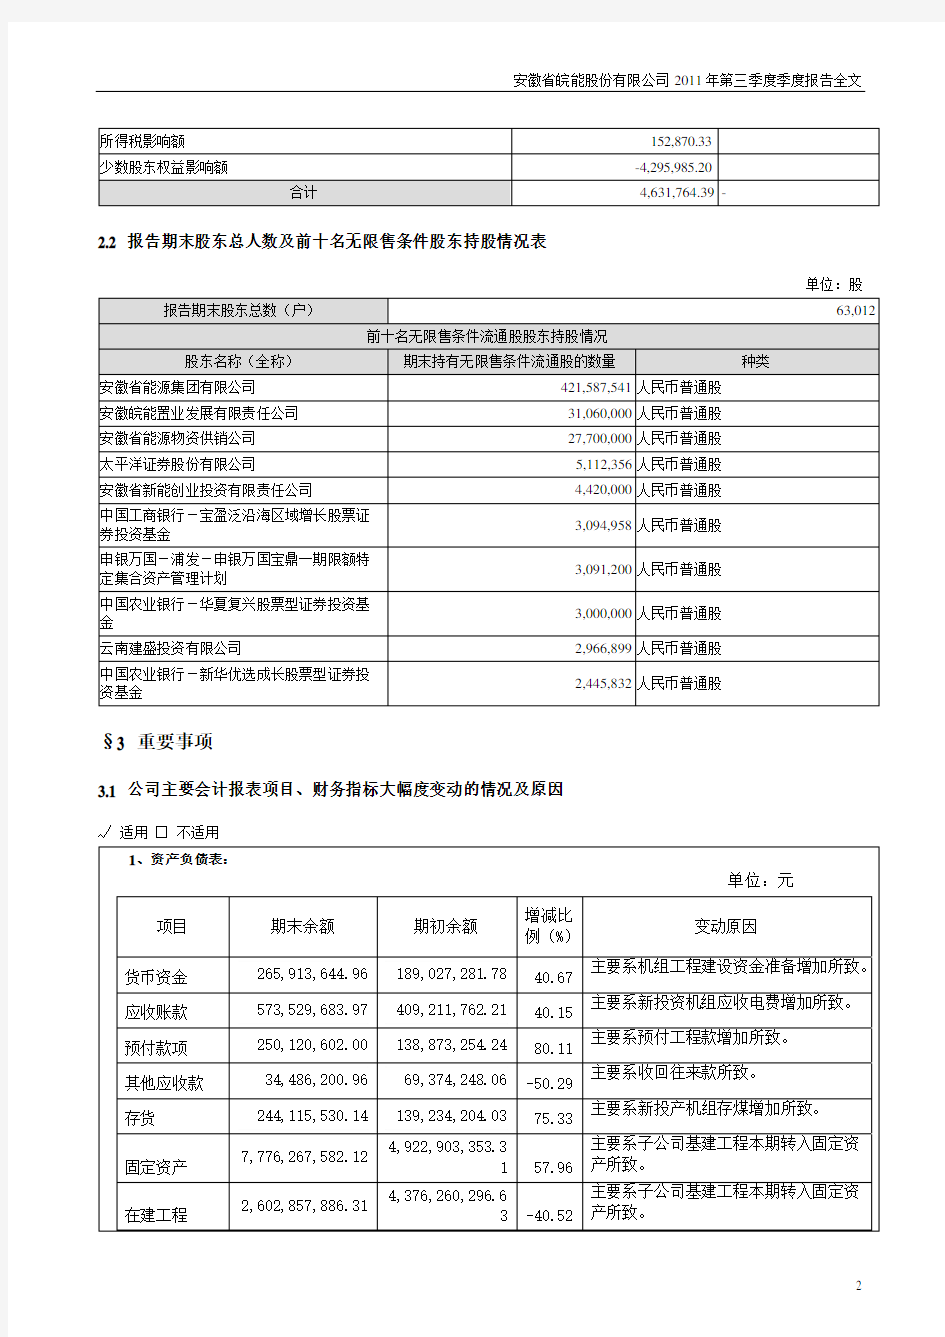 安徽省皖能股份有限公司 2011 年第三季度季度报告全文